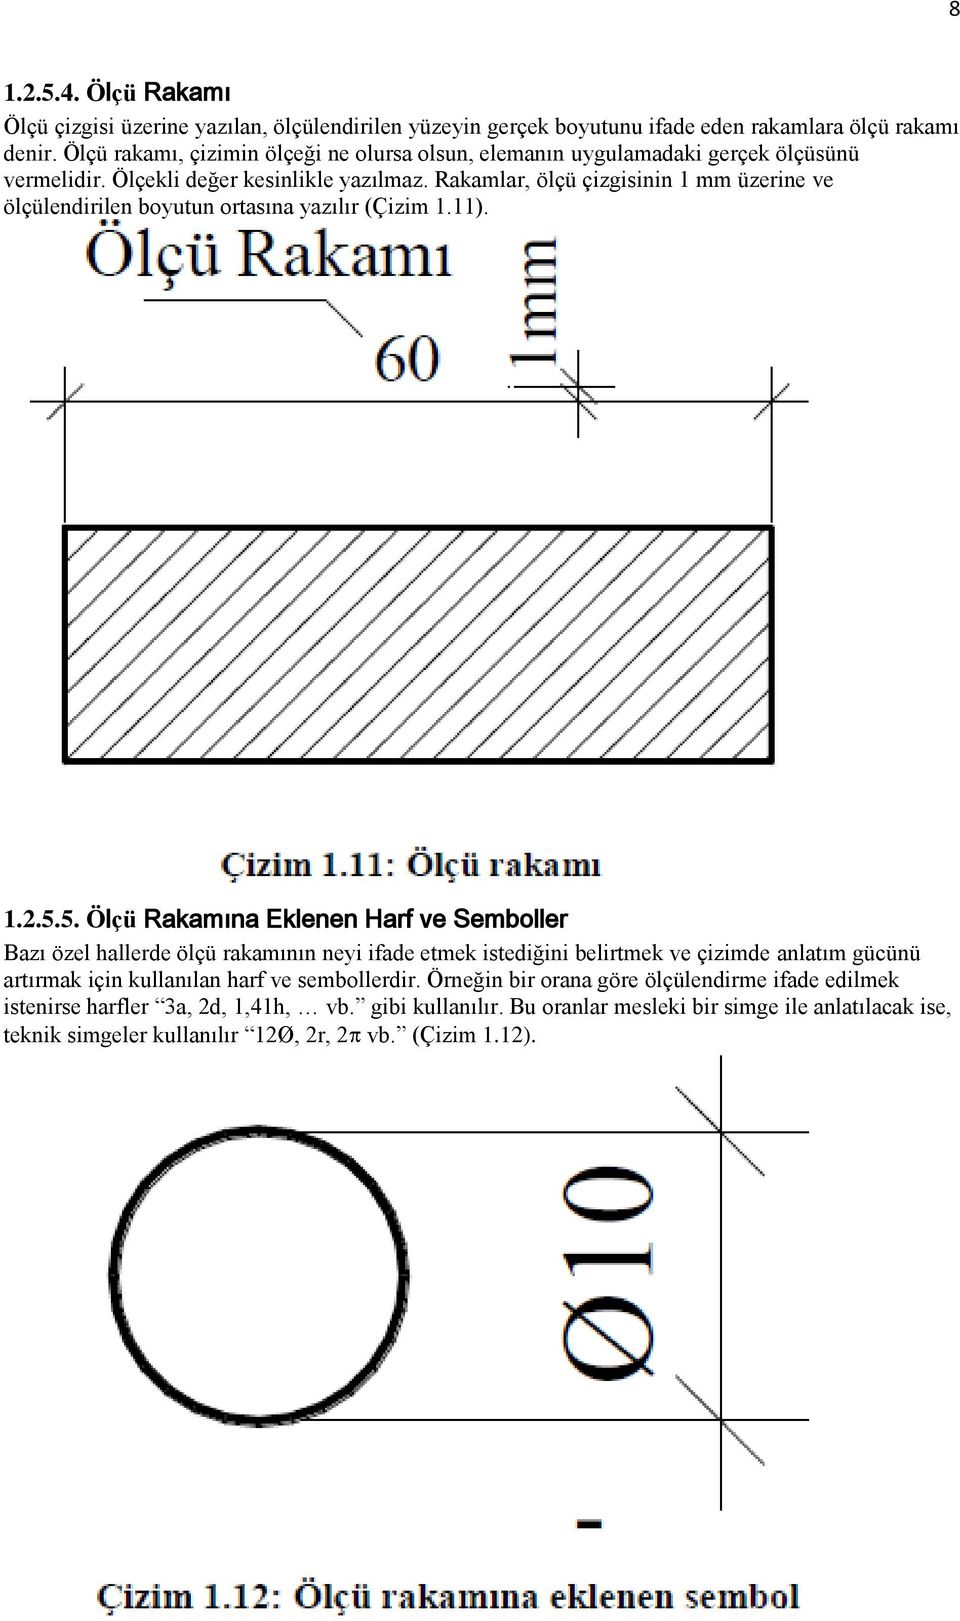 Rakamlar, ölçü çizgisinin 1 mm üzerine ve ölçülendirilen boyutun ortasına yazılır (Çizim 1.11). 1.2.5.